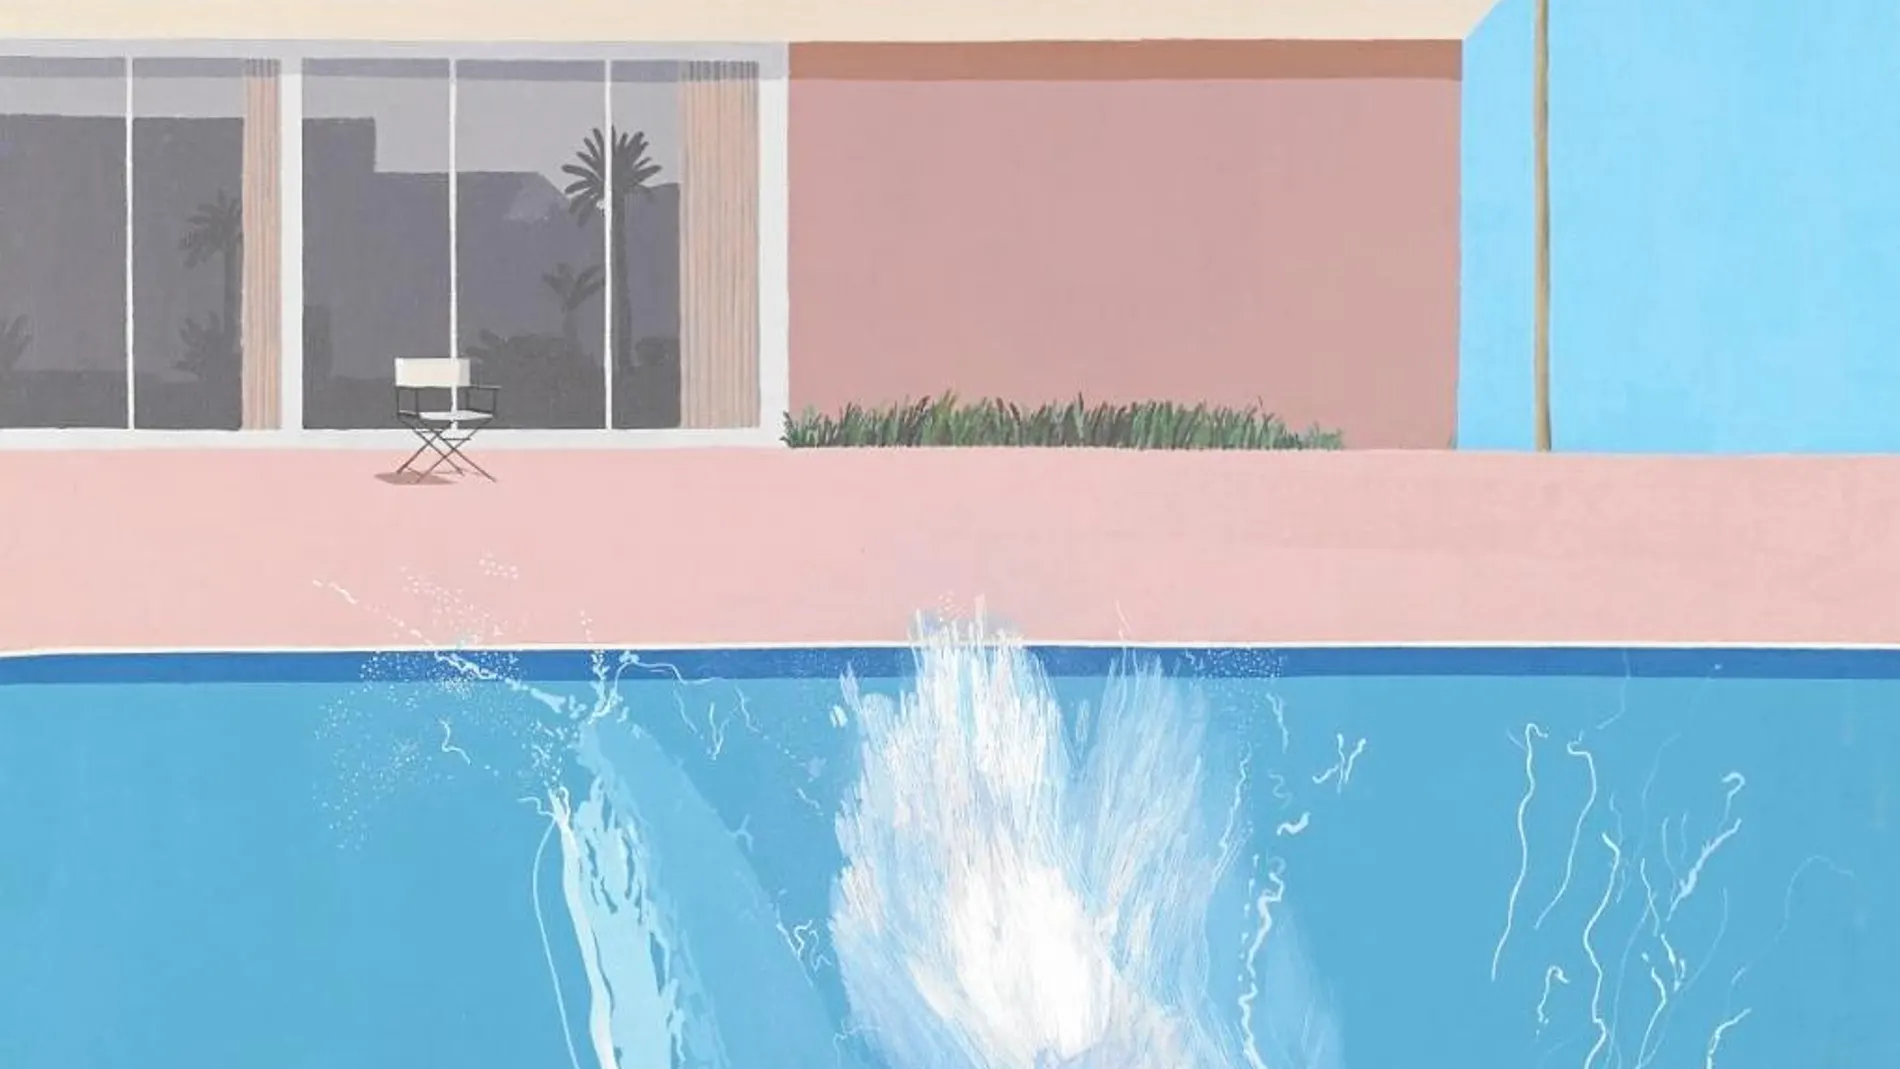 Icono de toda una obra, «A Bigger Splash» es uno de los cuadros referenciales de David Hockney.